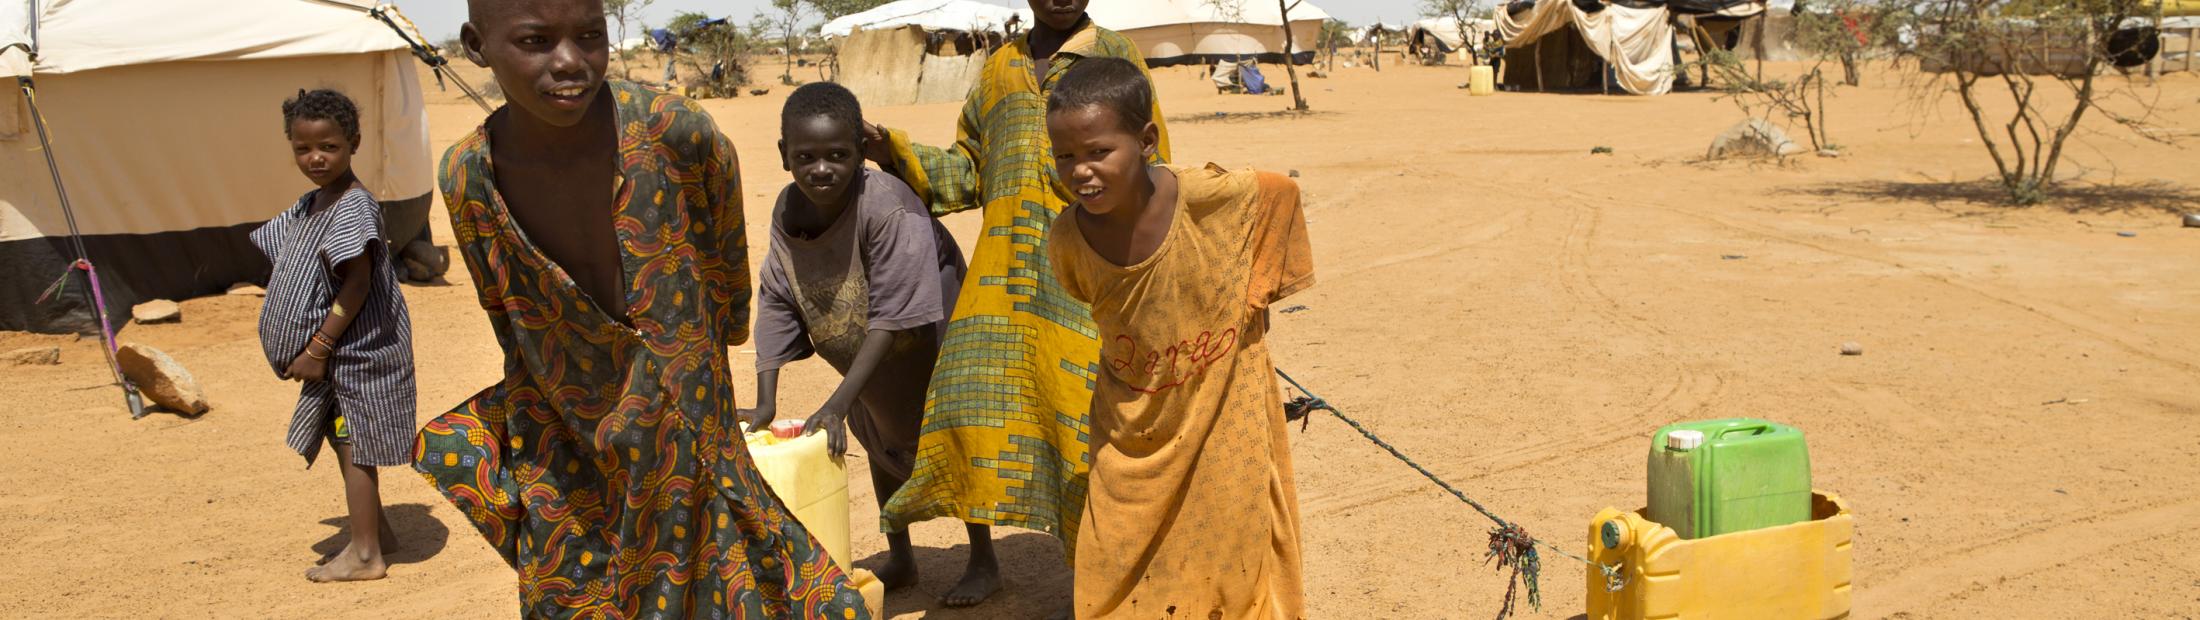 Los nuevos datos muestran un aumento en el número de desplazados internos en Malí